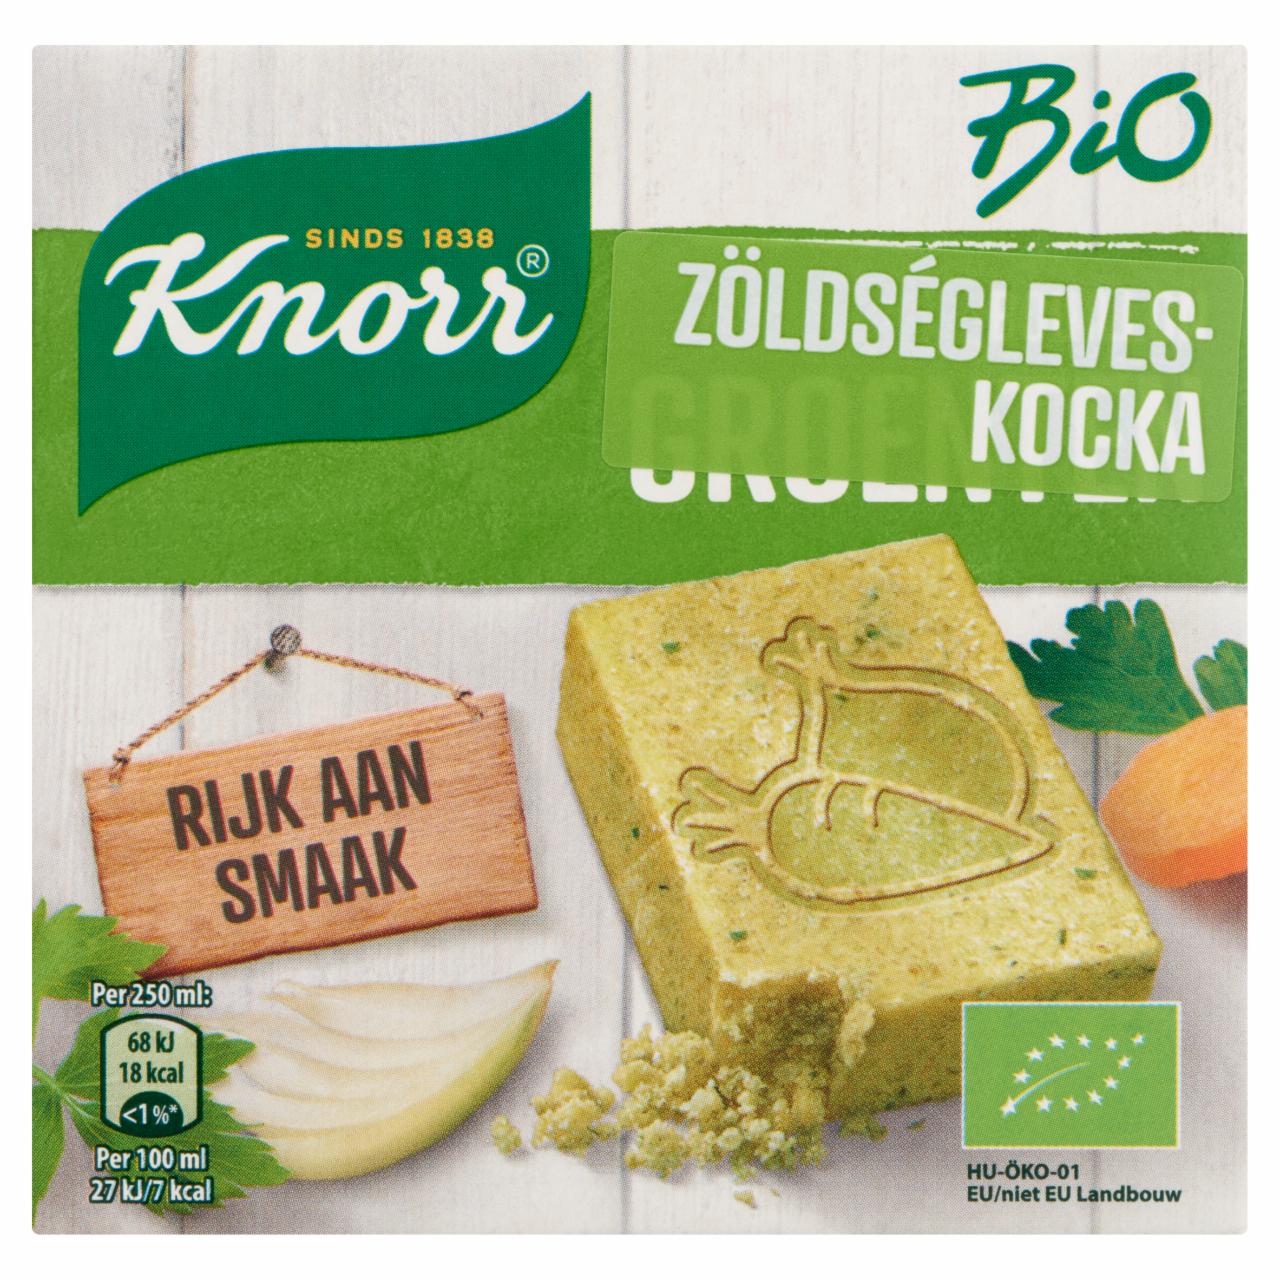 Képek - Knorr BIO zöldségleveskocka 6 db 60 g